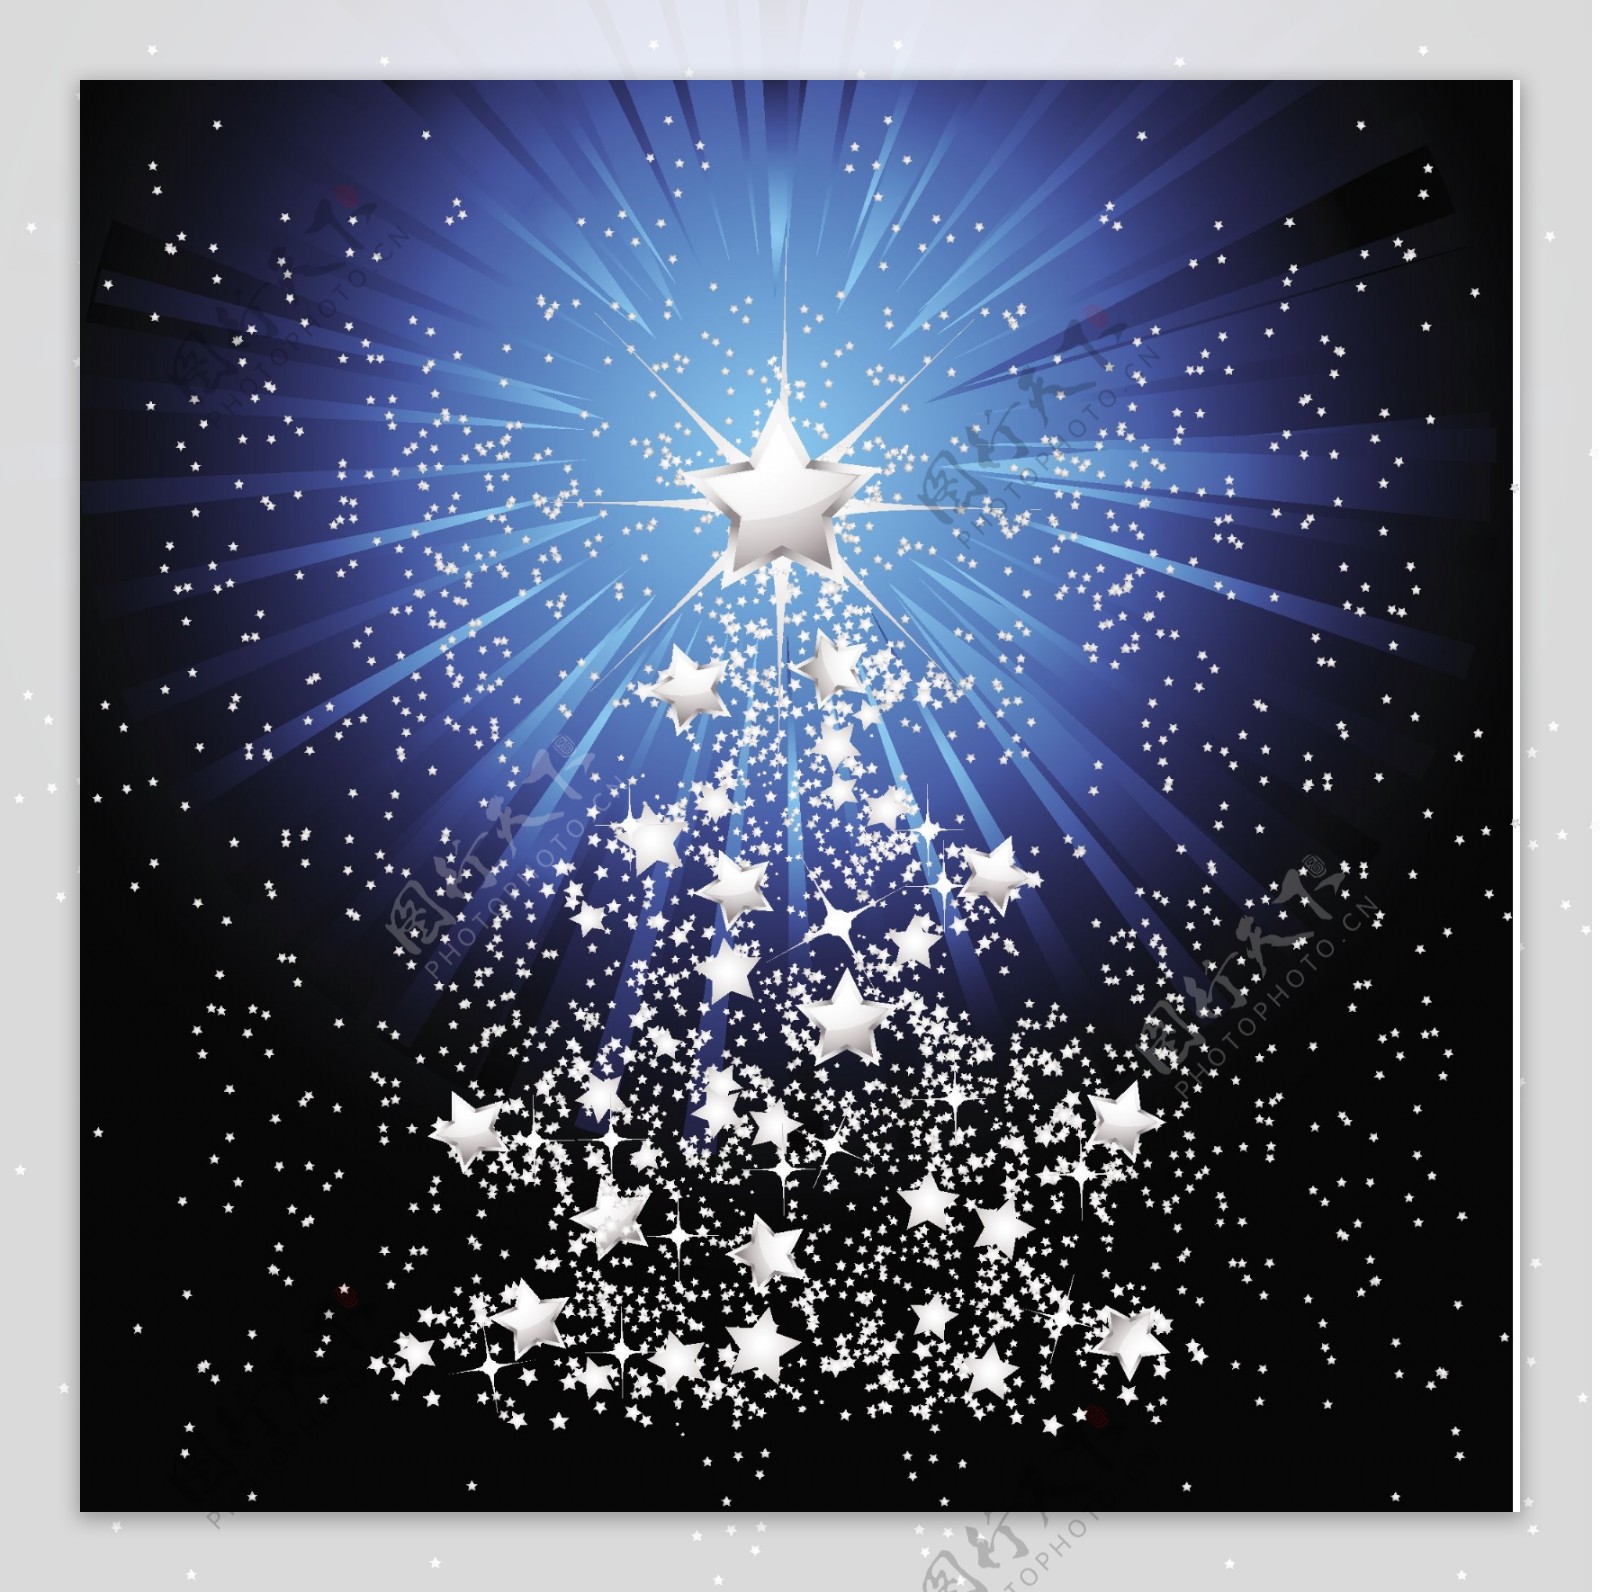 矢量星光放射背景圣诞树